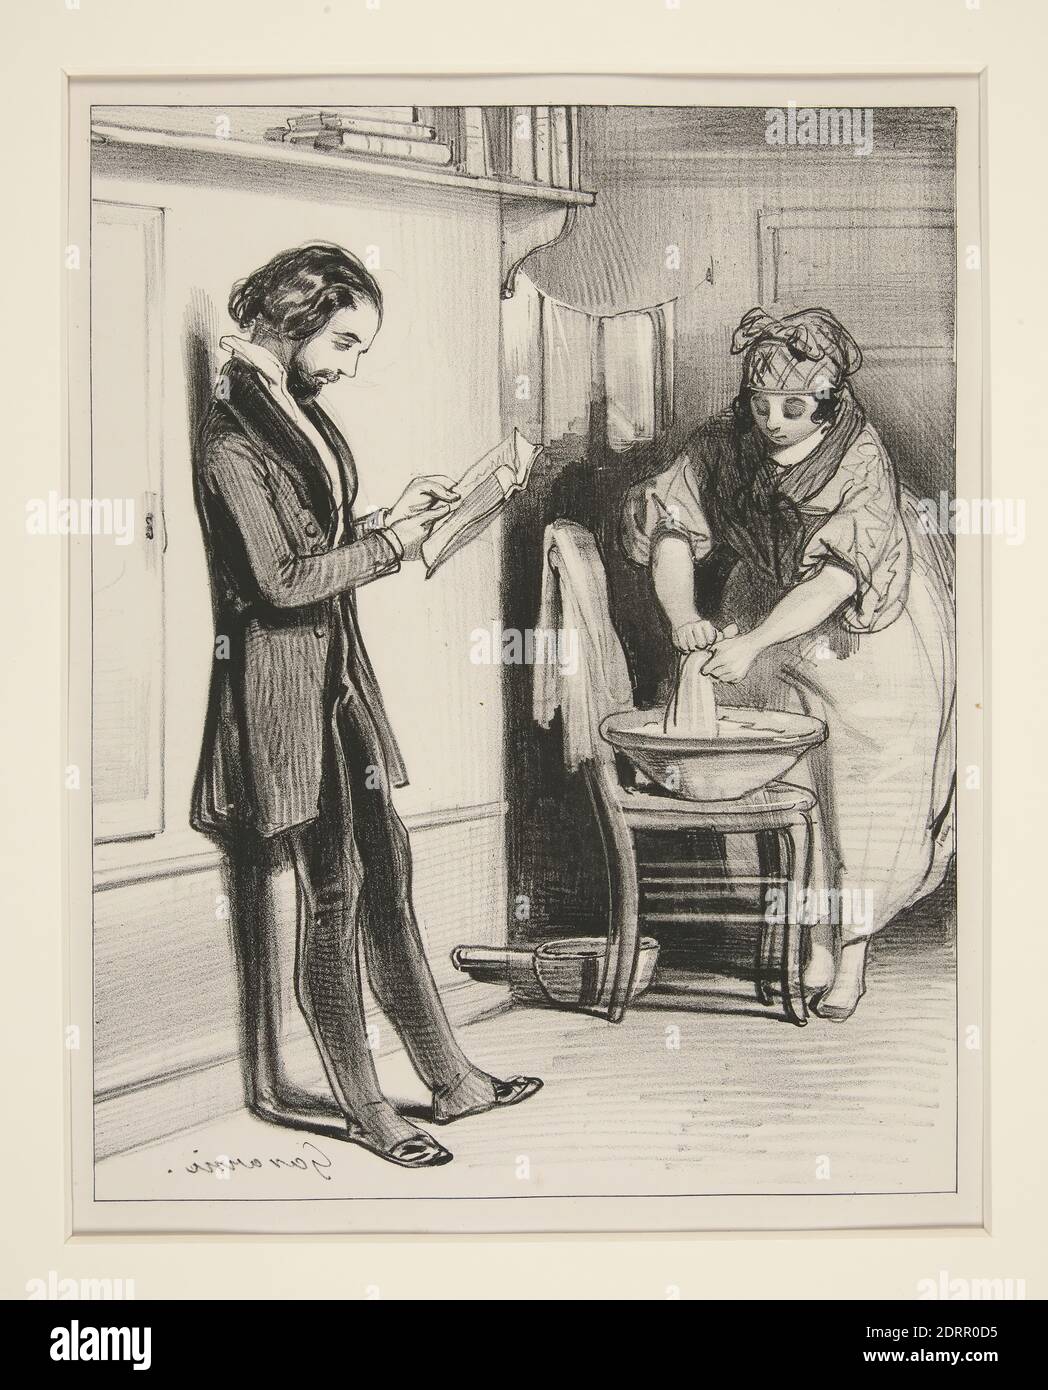 Artista: Paul Gavarni, Francese, 1804–1866, articolo 212 Du Code Civil, litografia, Francese, XIX secolo, opere su carta - stampe Foto Stock